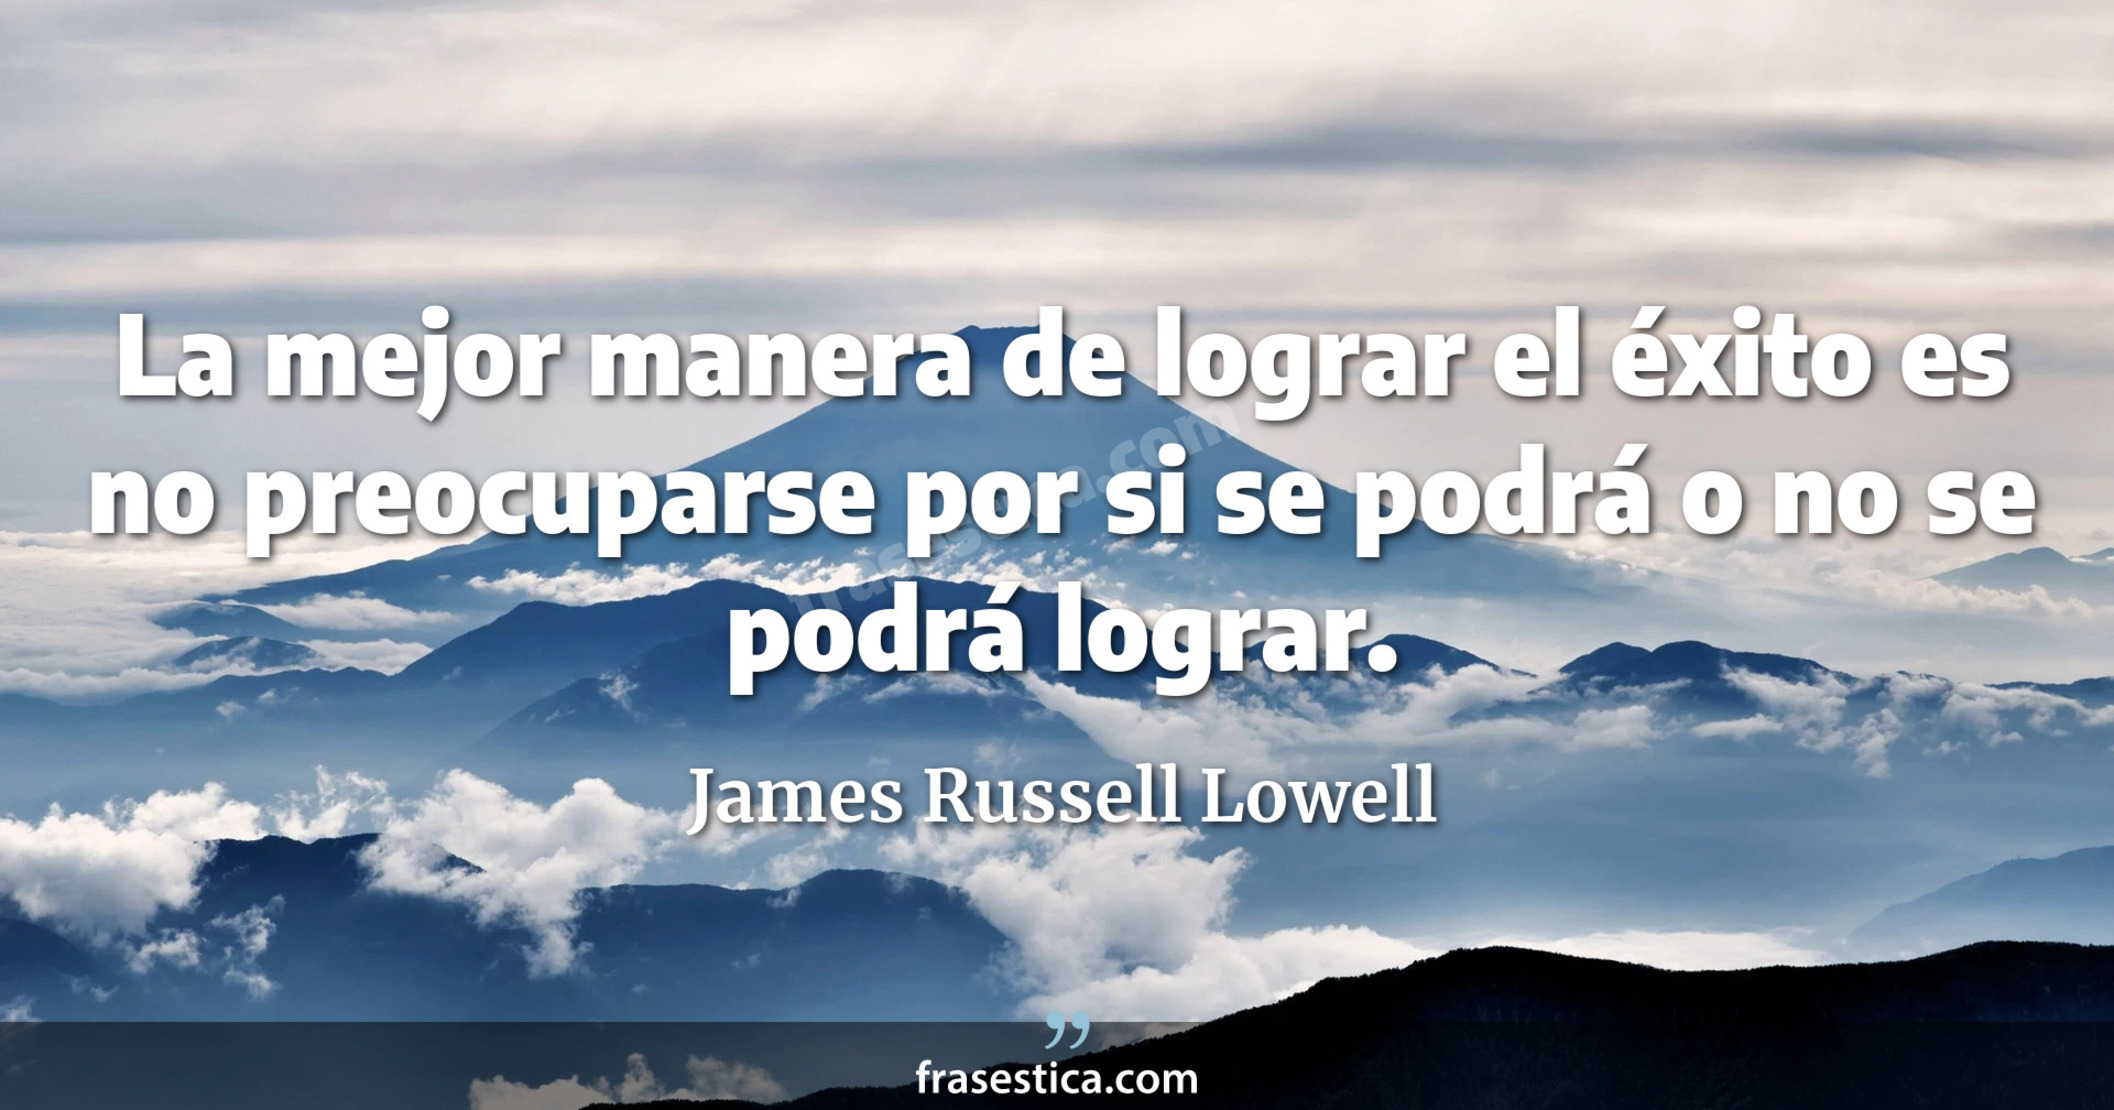 La mejor manera de lograr el éxito es no preocuparse por si se podrá o no se podrá lograr. - James Russell Lowell